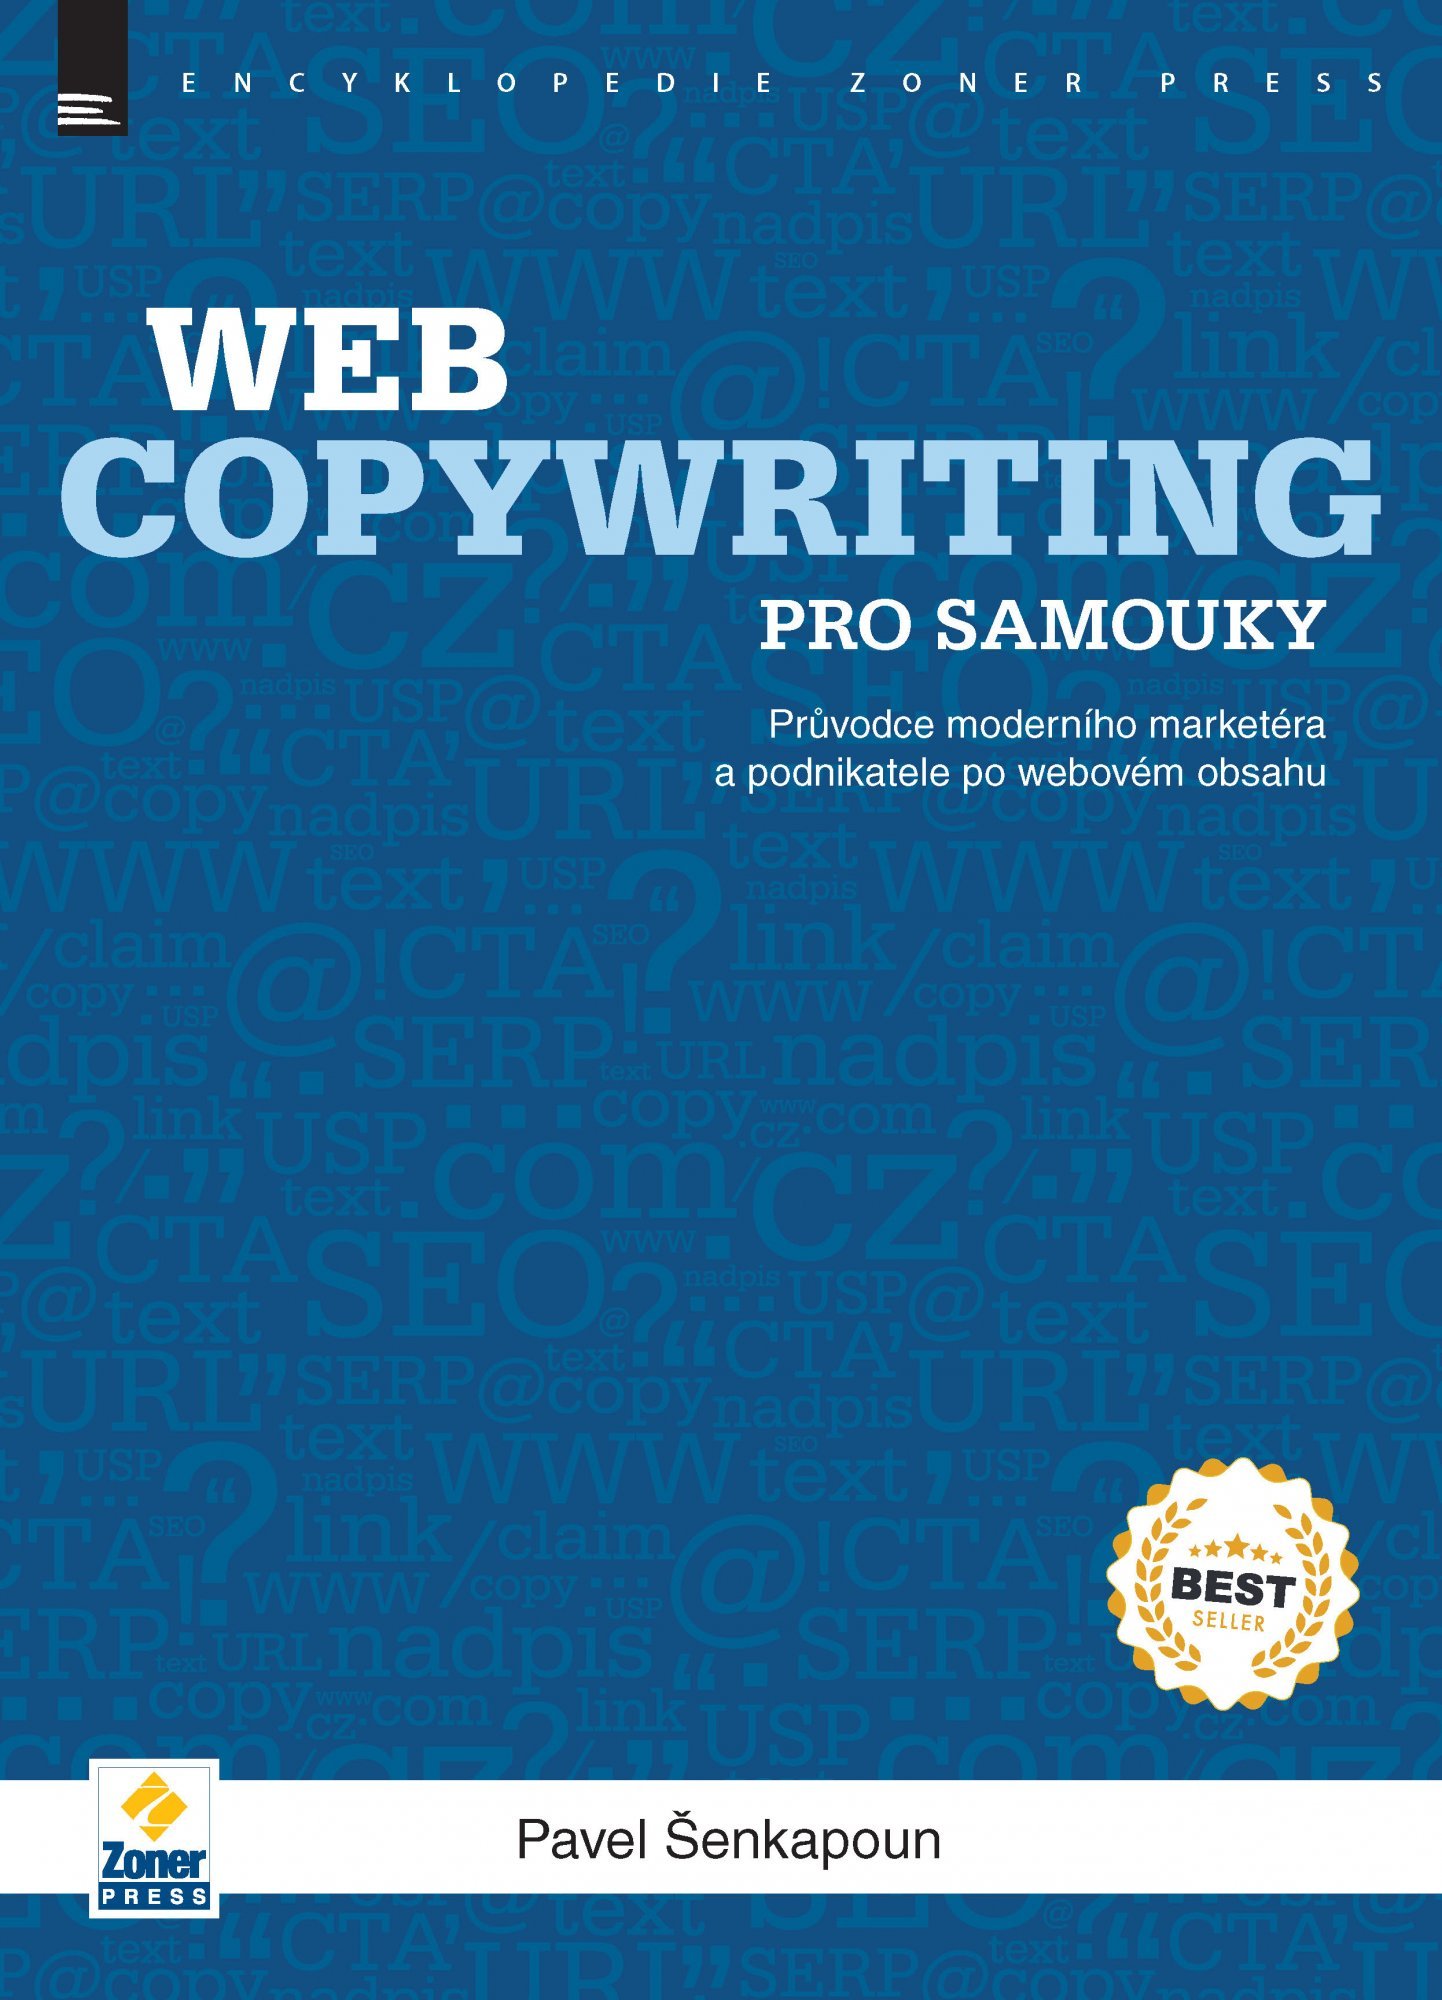 Webcopywriting pro samouky - Průvodce moderního marketéra a podnikatele po webovém obsahu - Pavel Šenkapoun